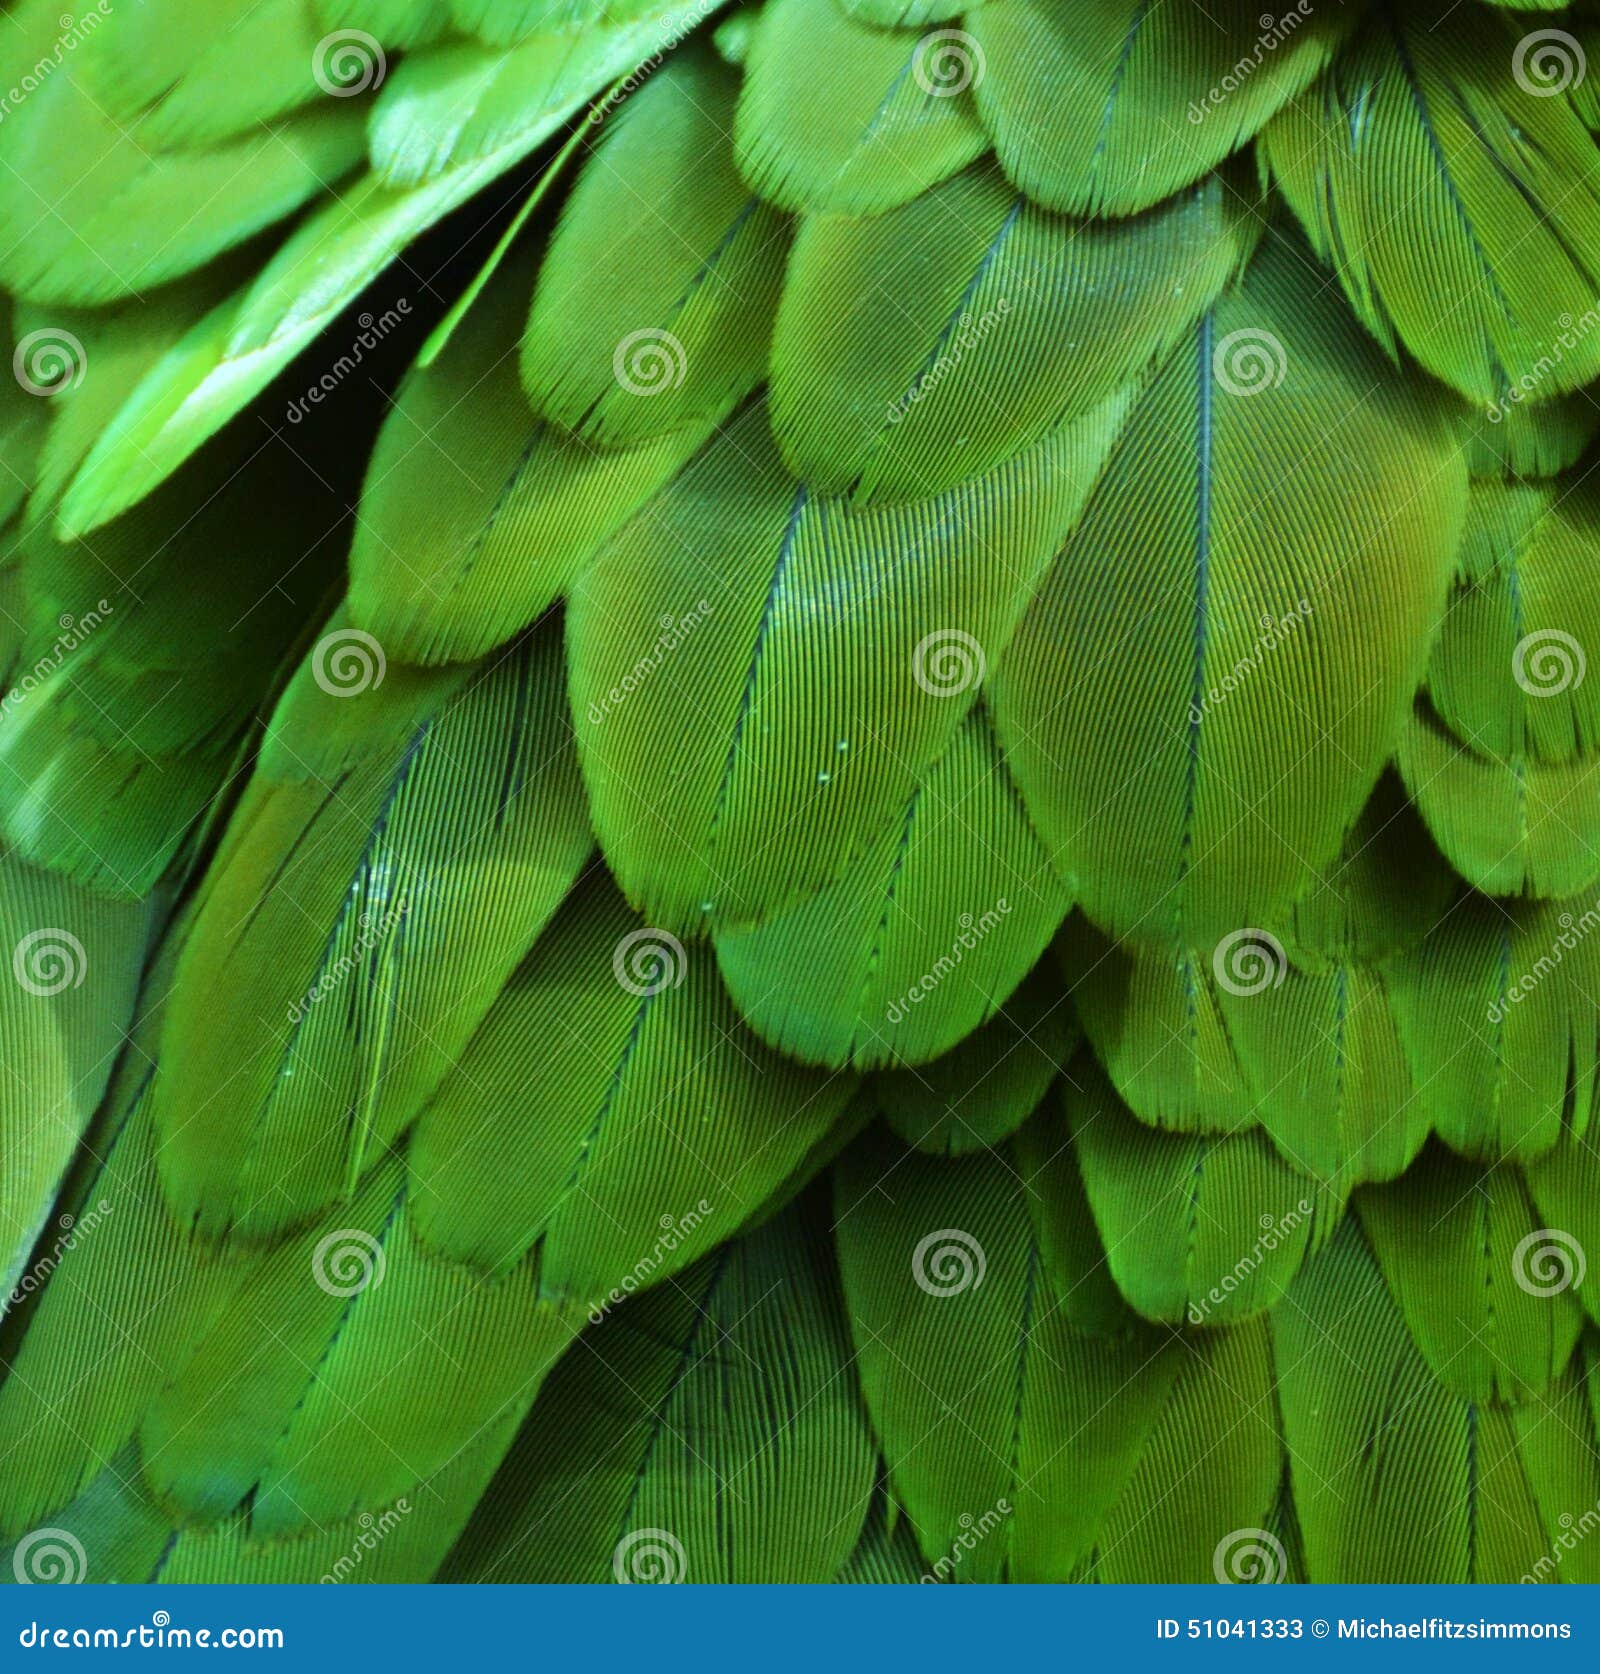 Calumnia Transitorio tolerancia Plumas verdes del Macaw imagen de archivo. Imagen de pluma - 51041333